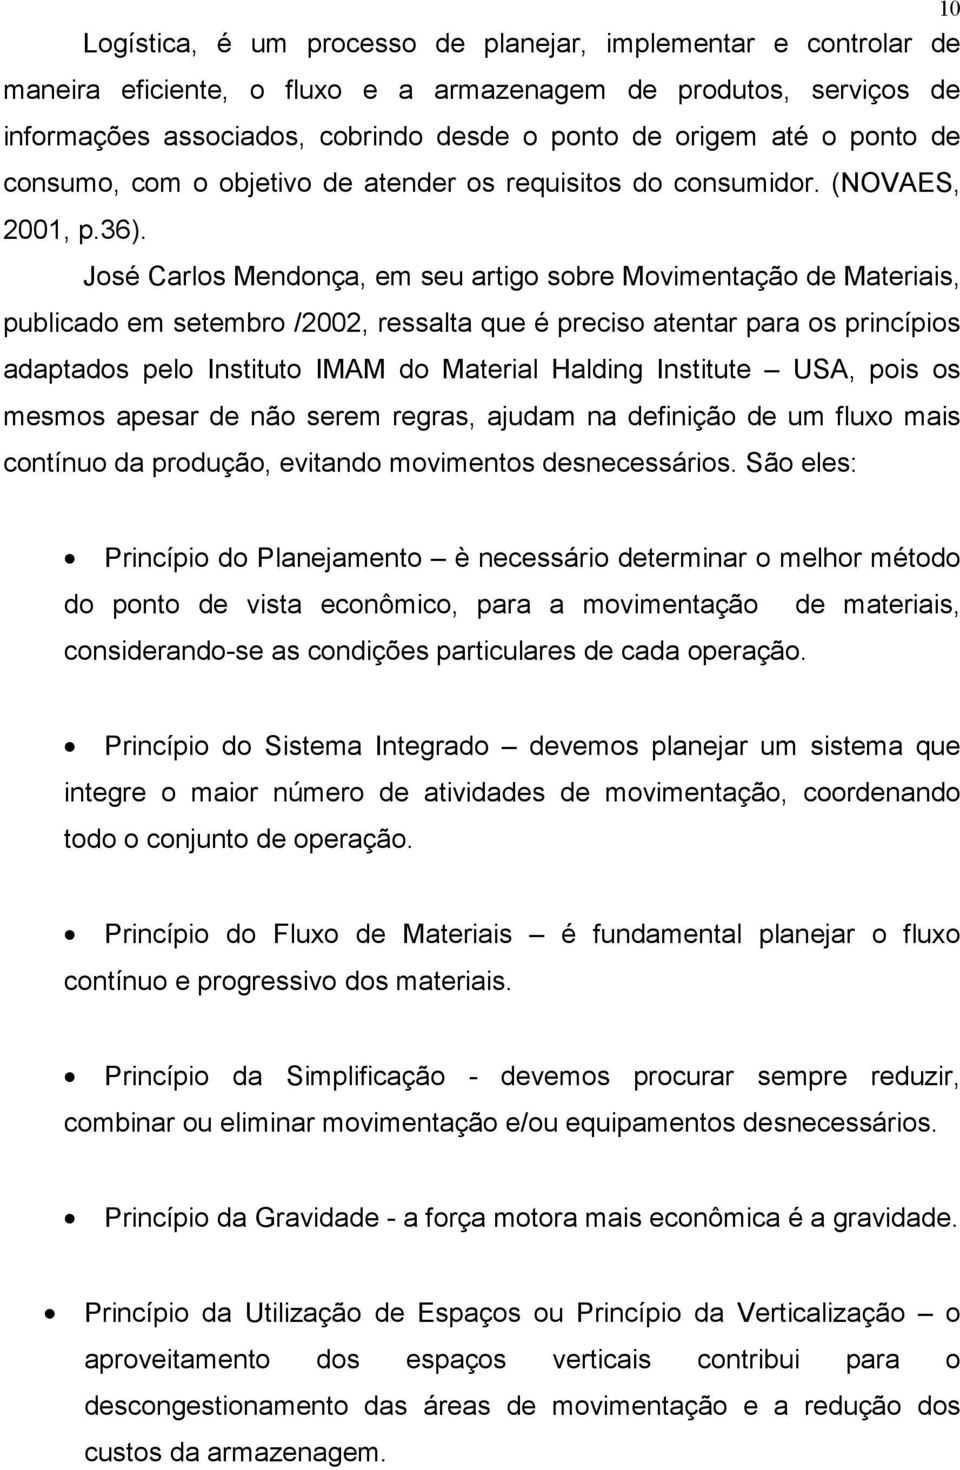 José Carlos Mendonça, em seu artigo sobre Movimentação de Materiais, publicado em setembro /2002, ressalta que é preciso atentar para os princípios adaptados pelo Instituto IMAM do Material Halding